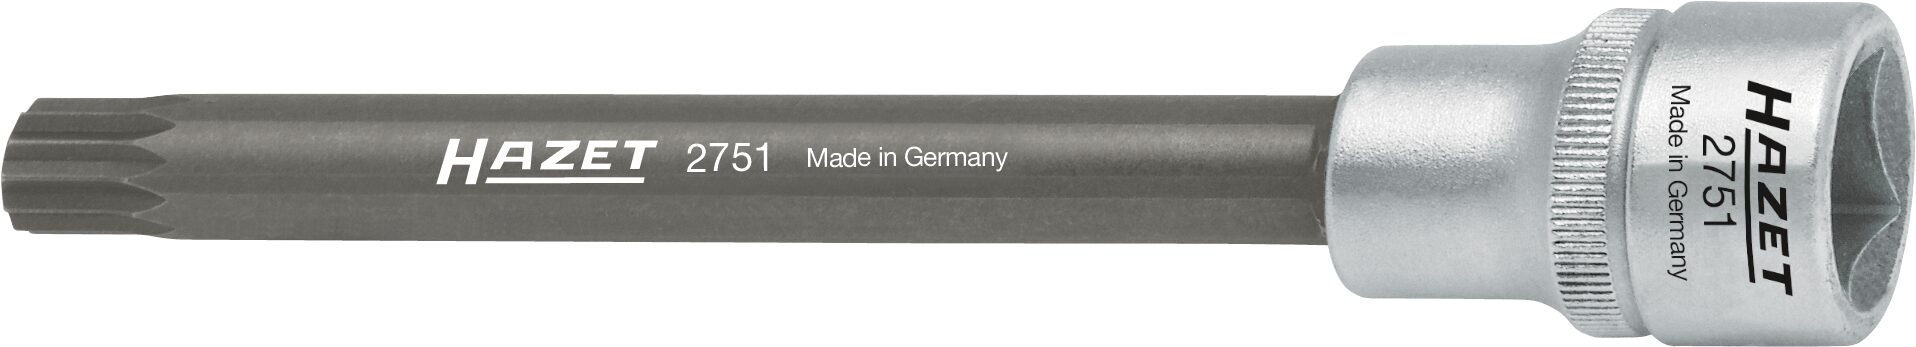 HAZET Zylinderkopf Schraubendreher-Steckschlüsseleinsatz 2751 · Vierkant hohl 12,5 mm (1/2 Zoll) · Innen Vielzahn Profil XZN · M10